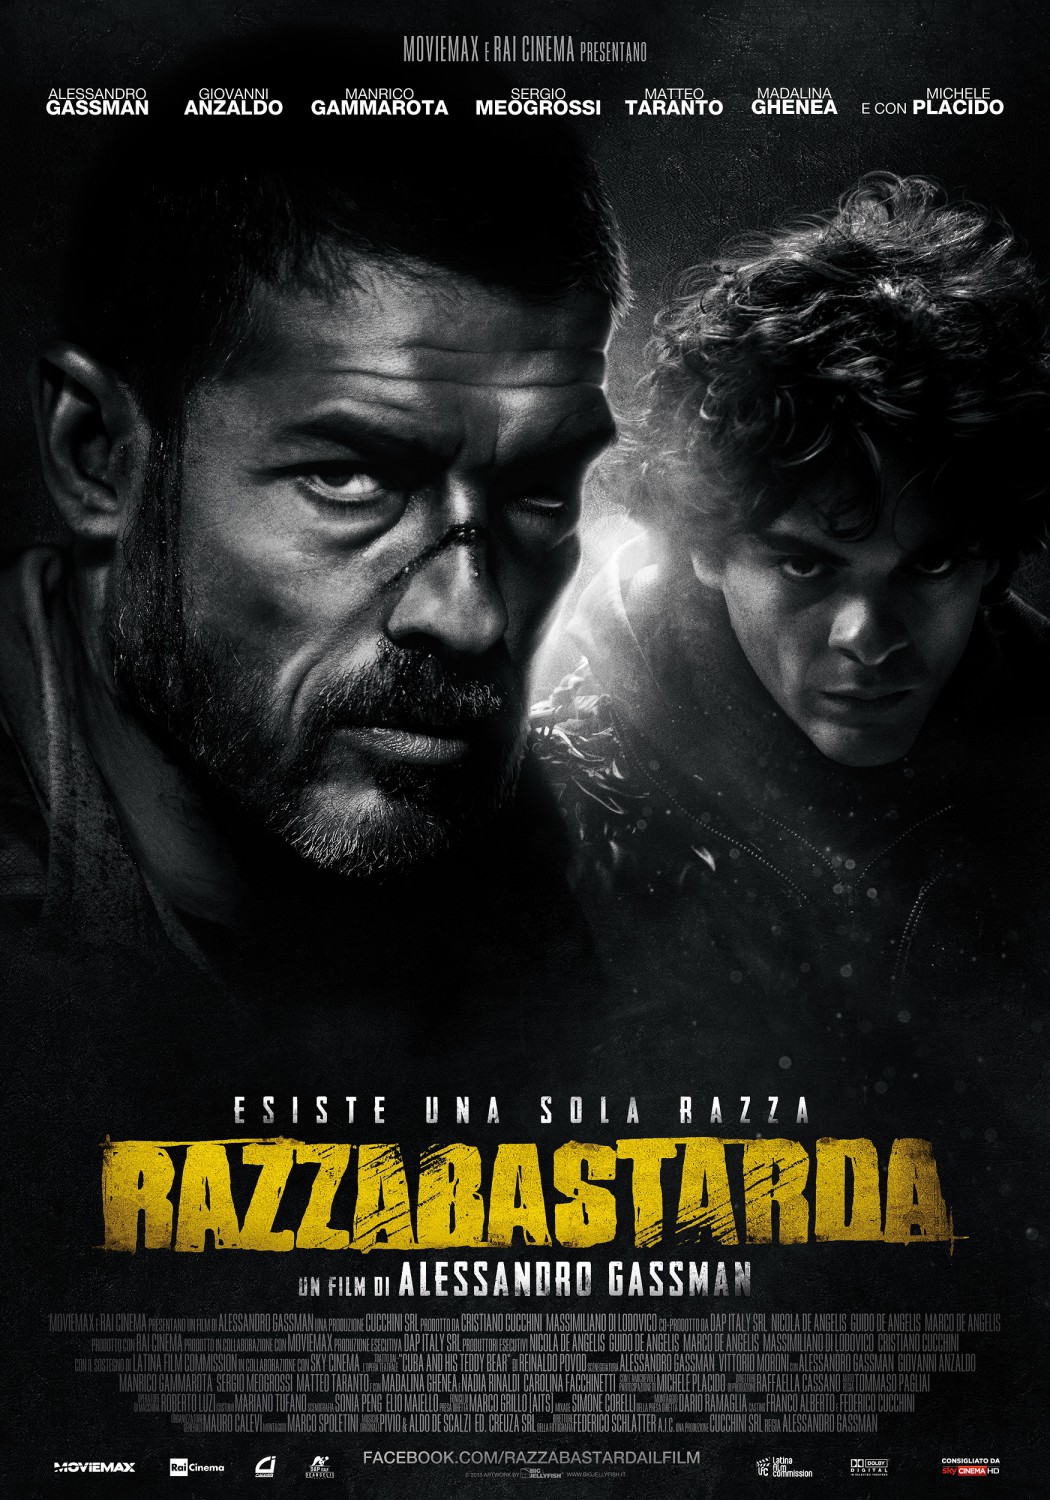 Extra Large Movie Poster Image for Razza bastarda (#8 of 8)